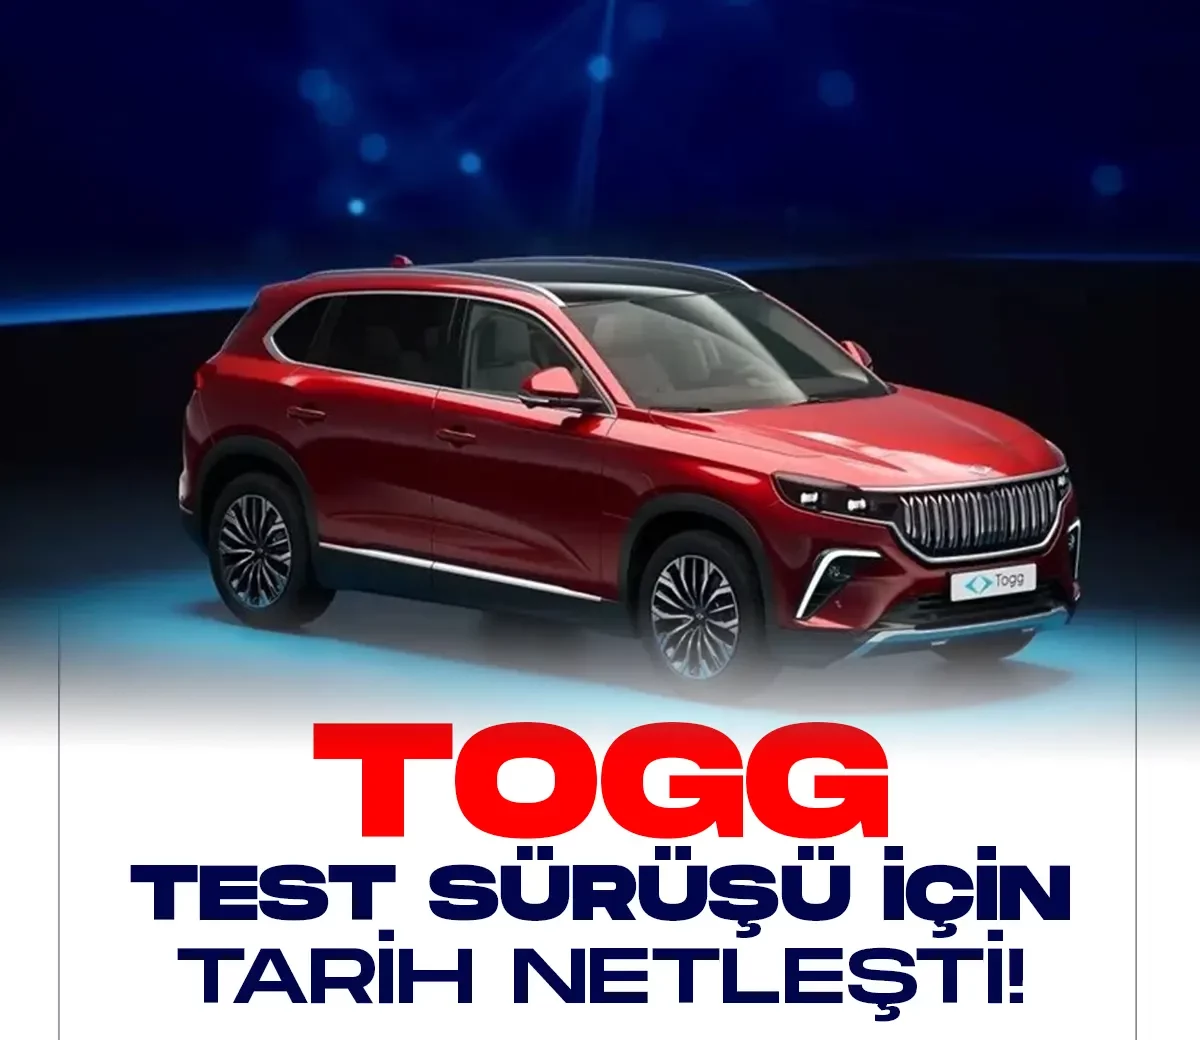 Türkiye'nin yerli ve milli arabası Togg'un test sürüşü net tarih verildi.